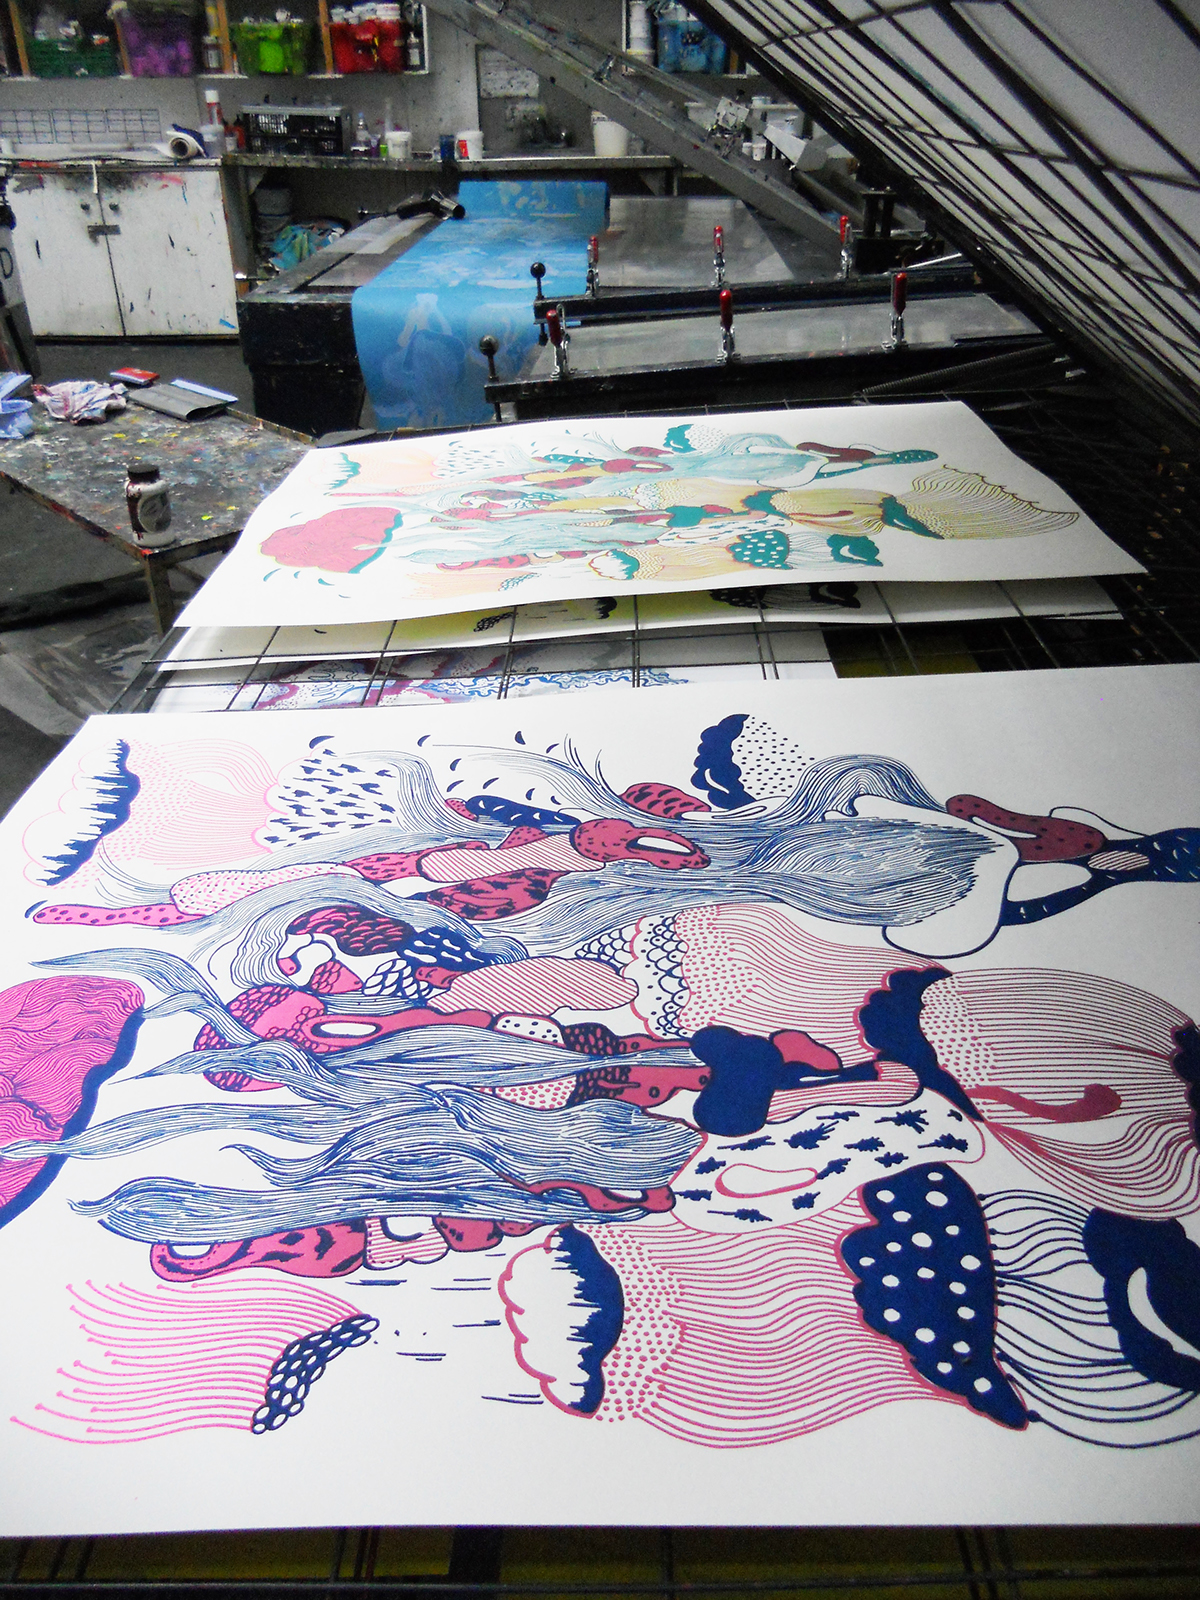 pattern design edition wallpaper silkscreen printmaking hand printed Wallpaper design edion of prints posters